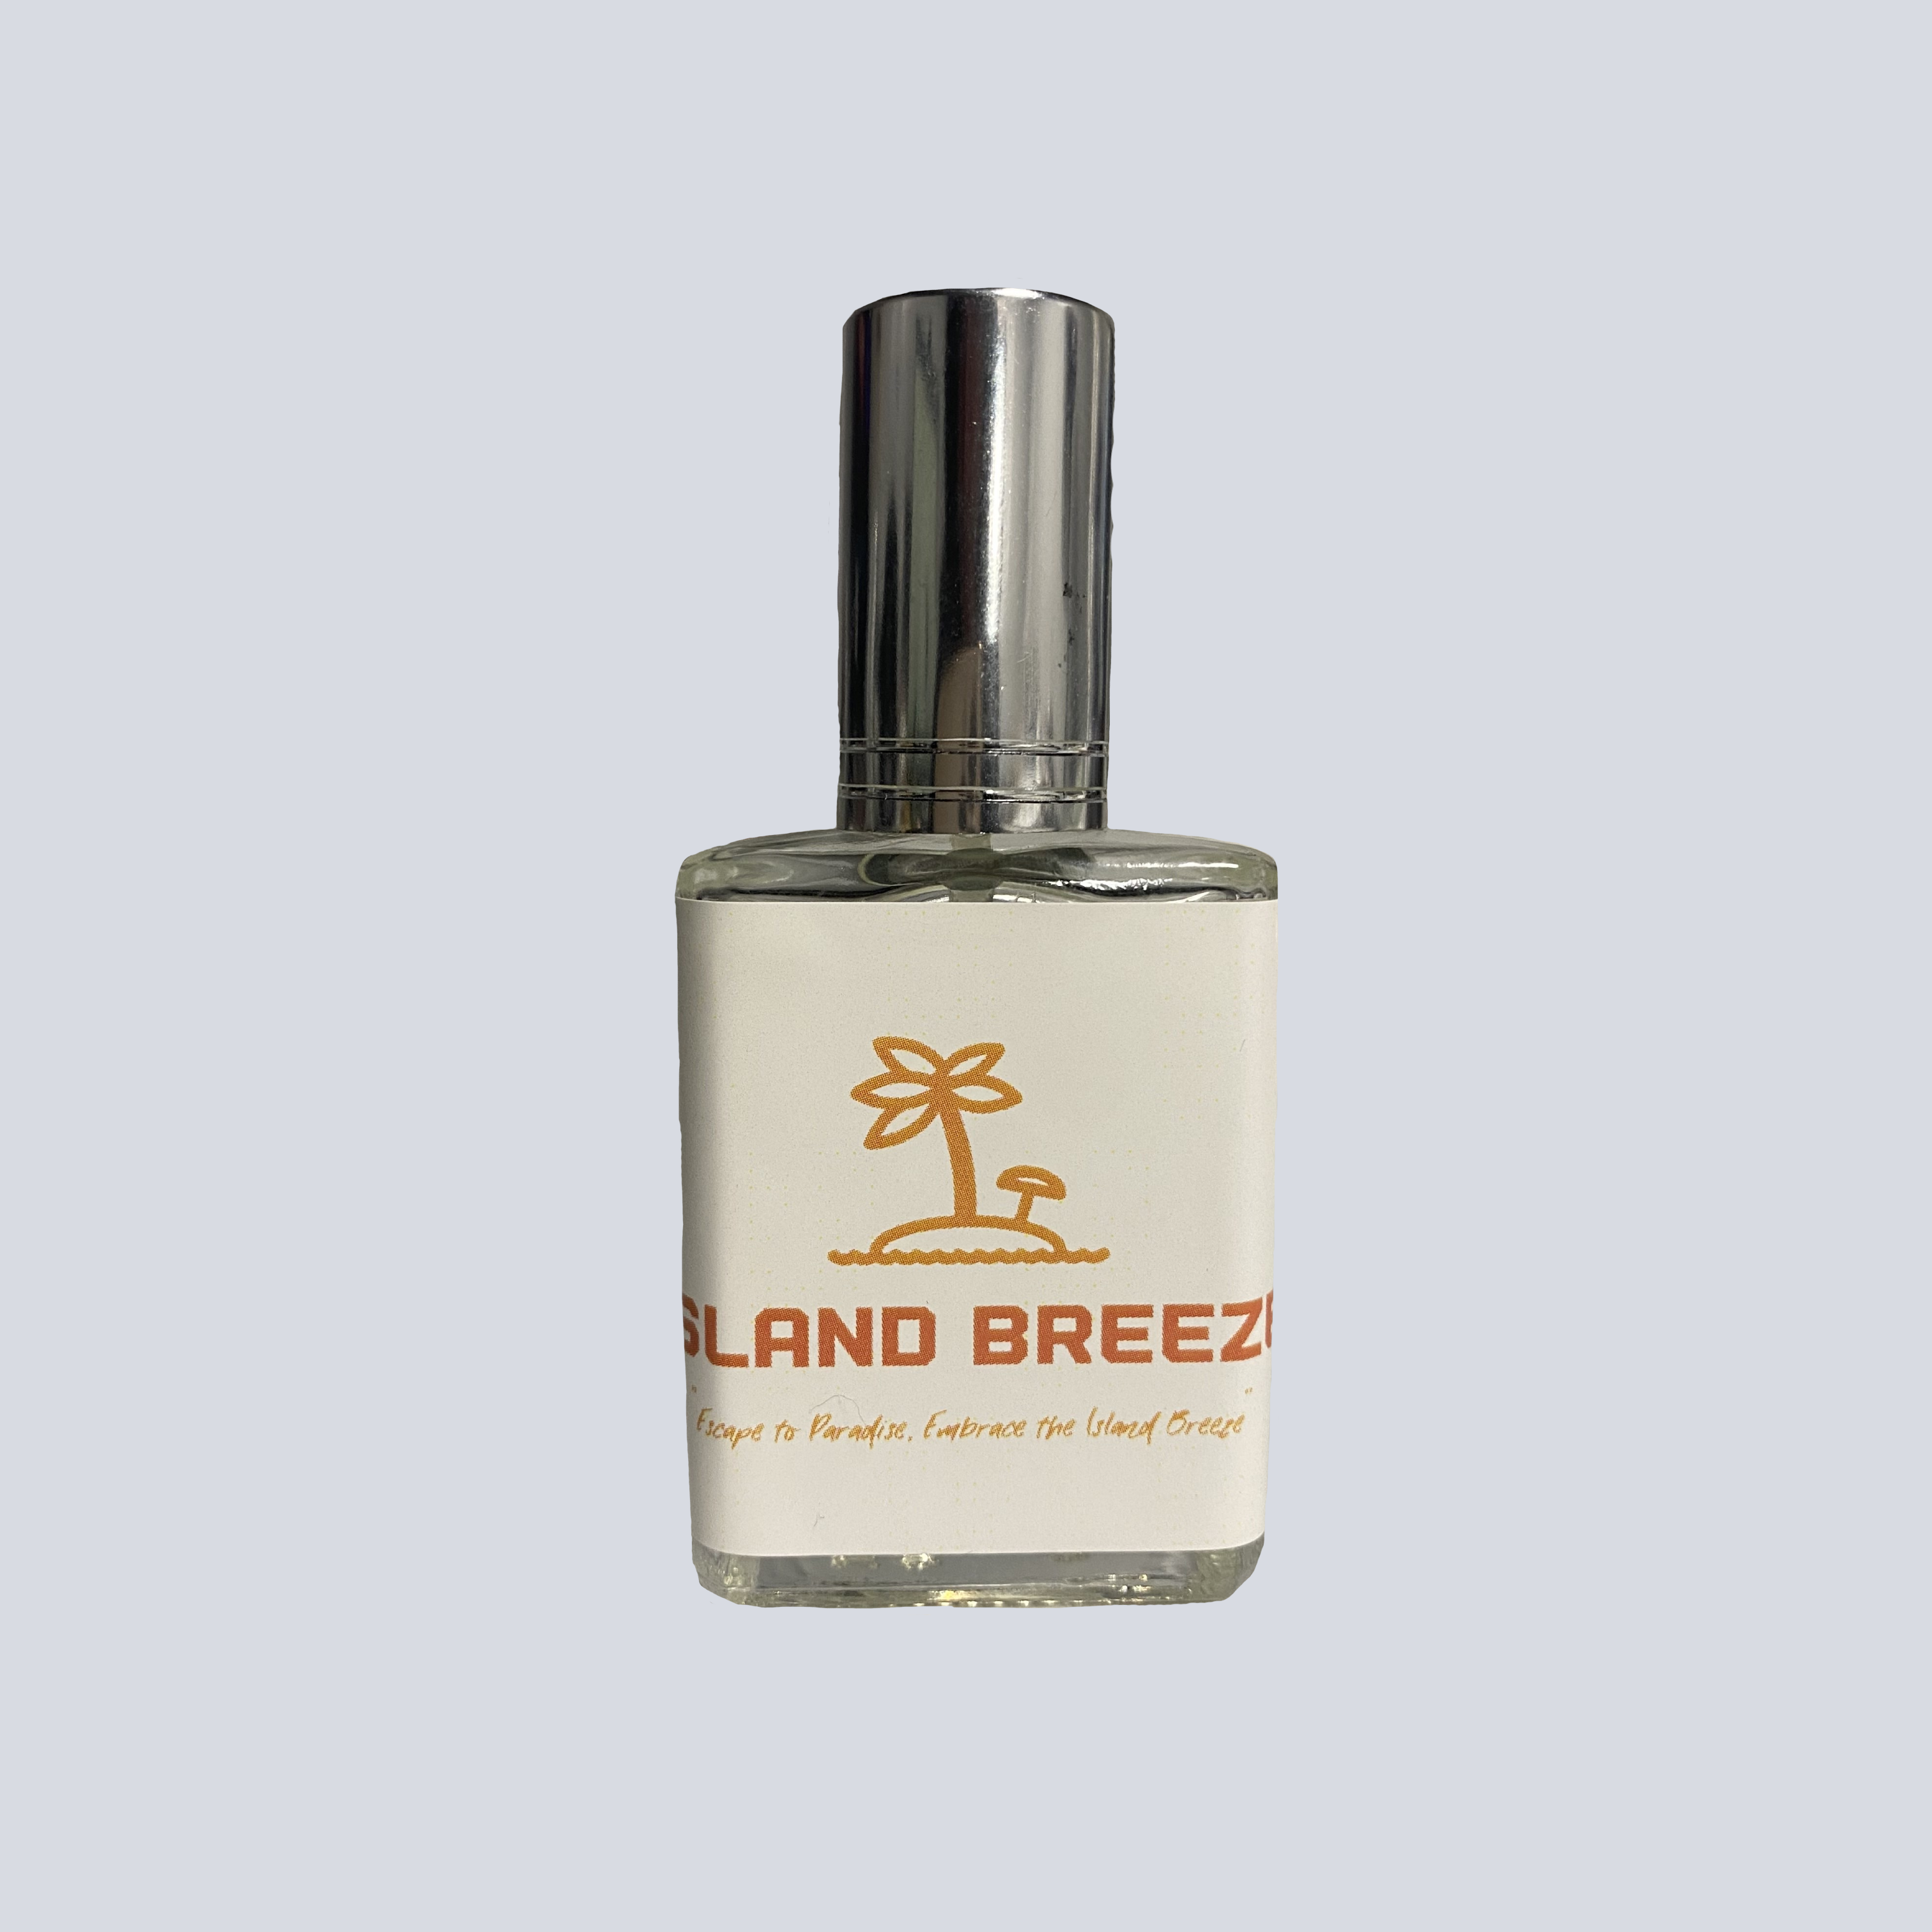 Island Breeze / Brise des Îles by Ulta (Body Mist) » Reviews & Perfume Facts